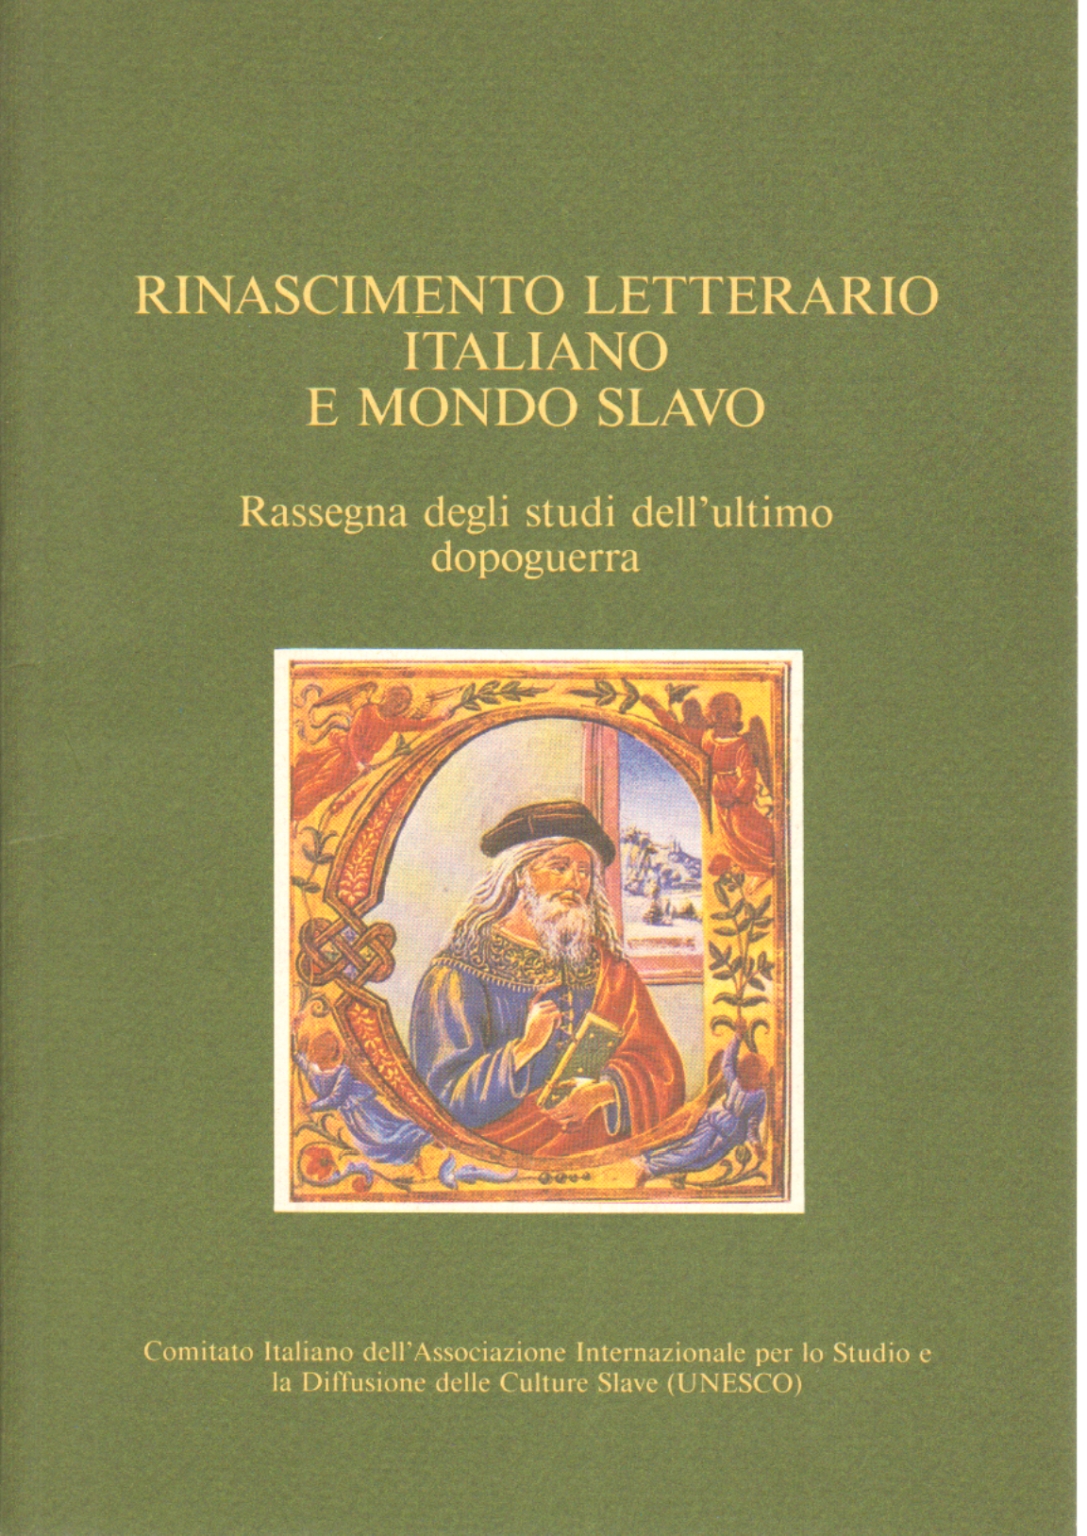 Literaria del renacimiento italiano y el mundo eslavo, y Sante Graciotti Emanuela Sgambati